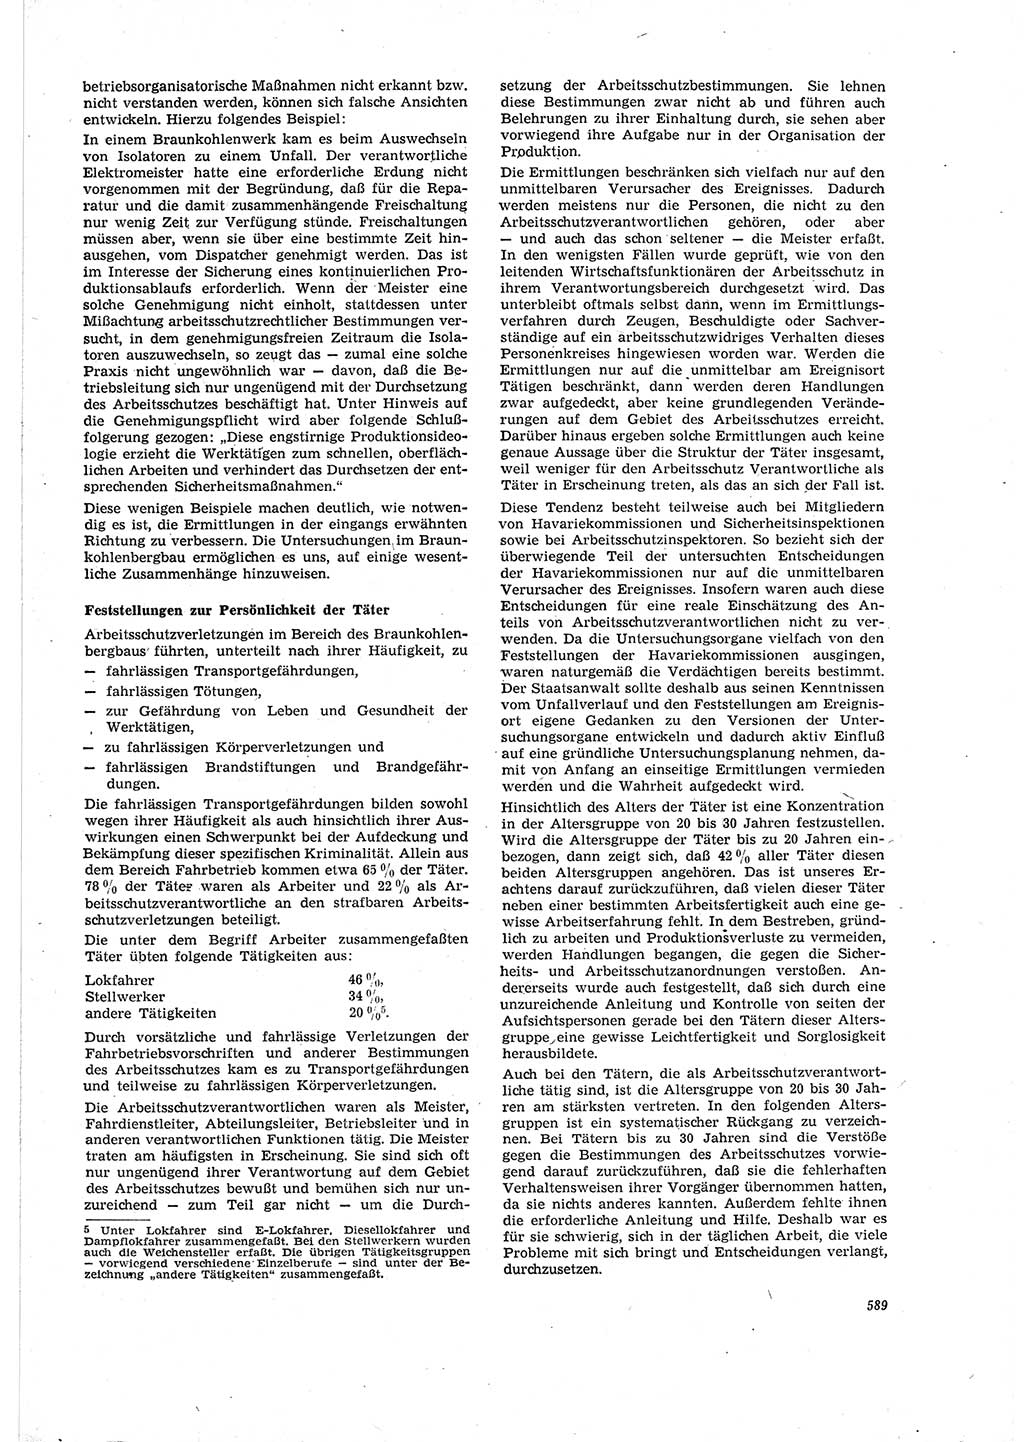 Neue Justiz (NJ), Zeitschrift für Recht und Rechtswissenschaft [Deutsche Demokratische Republik (DDR)], 20. Jahrgang 1966, Seite 589 (NJ DDR 1966, S. 589)